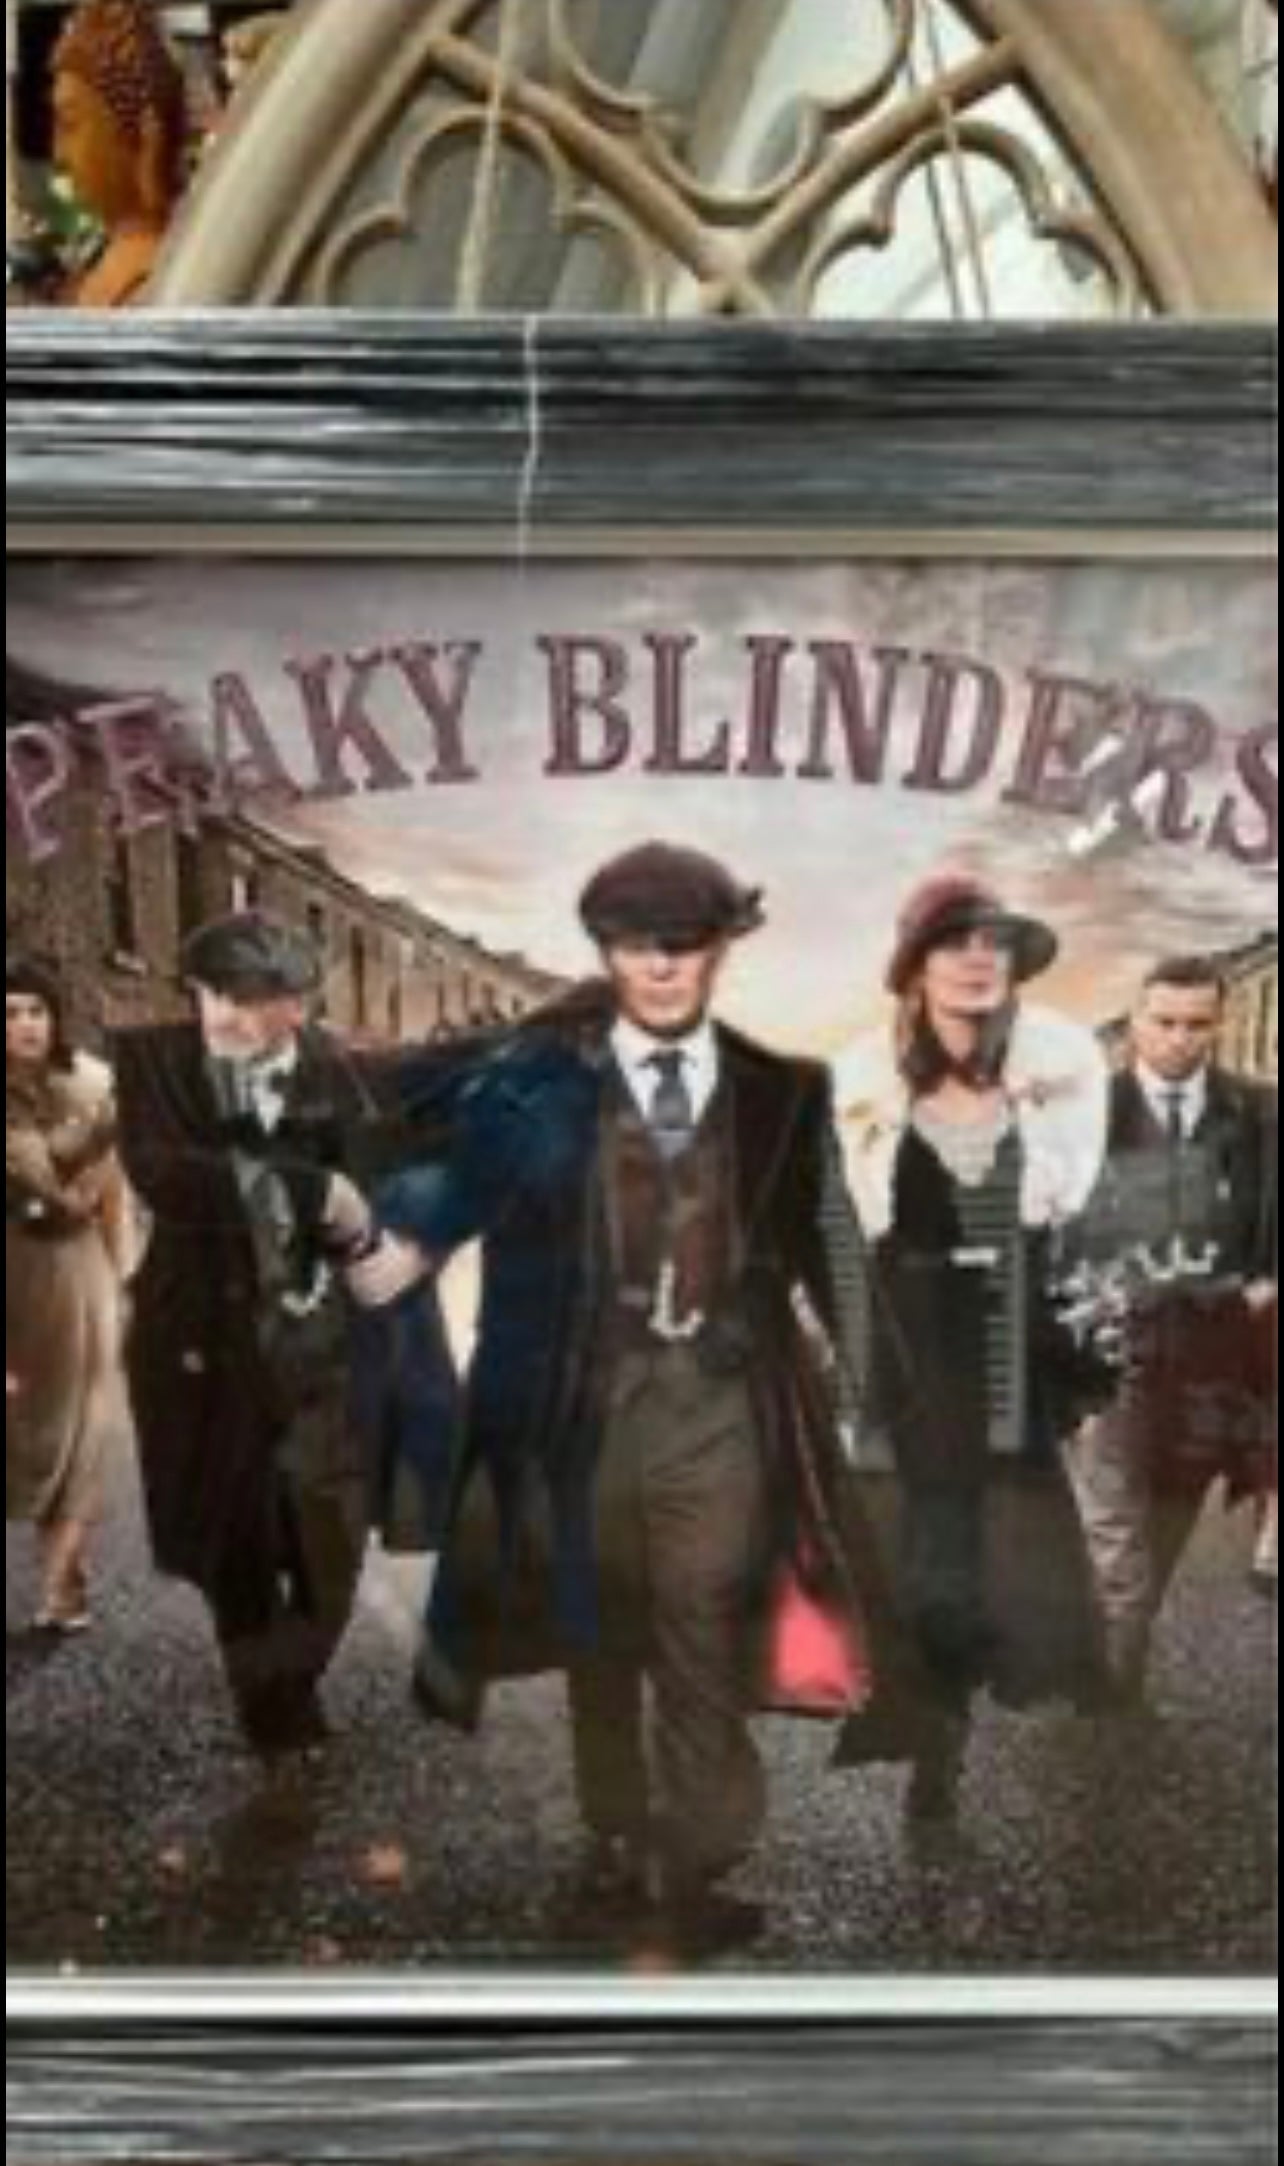 PEAKY BLINDERS Picture